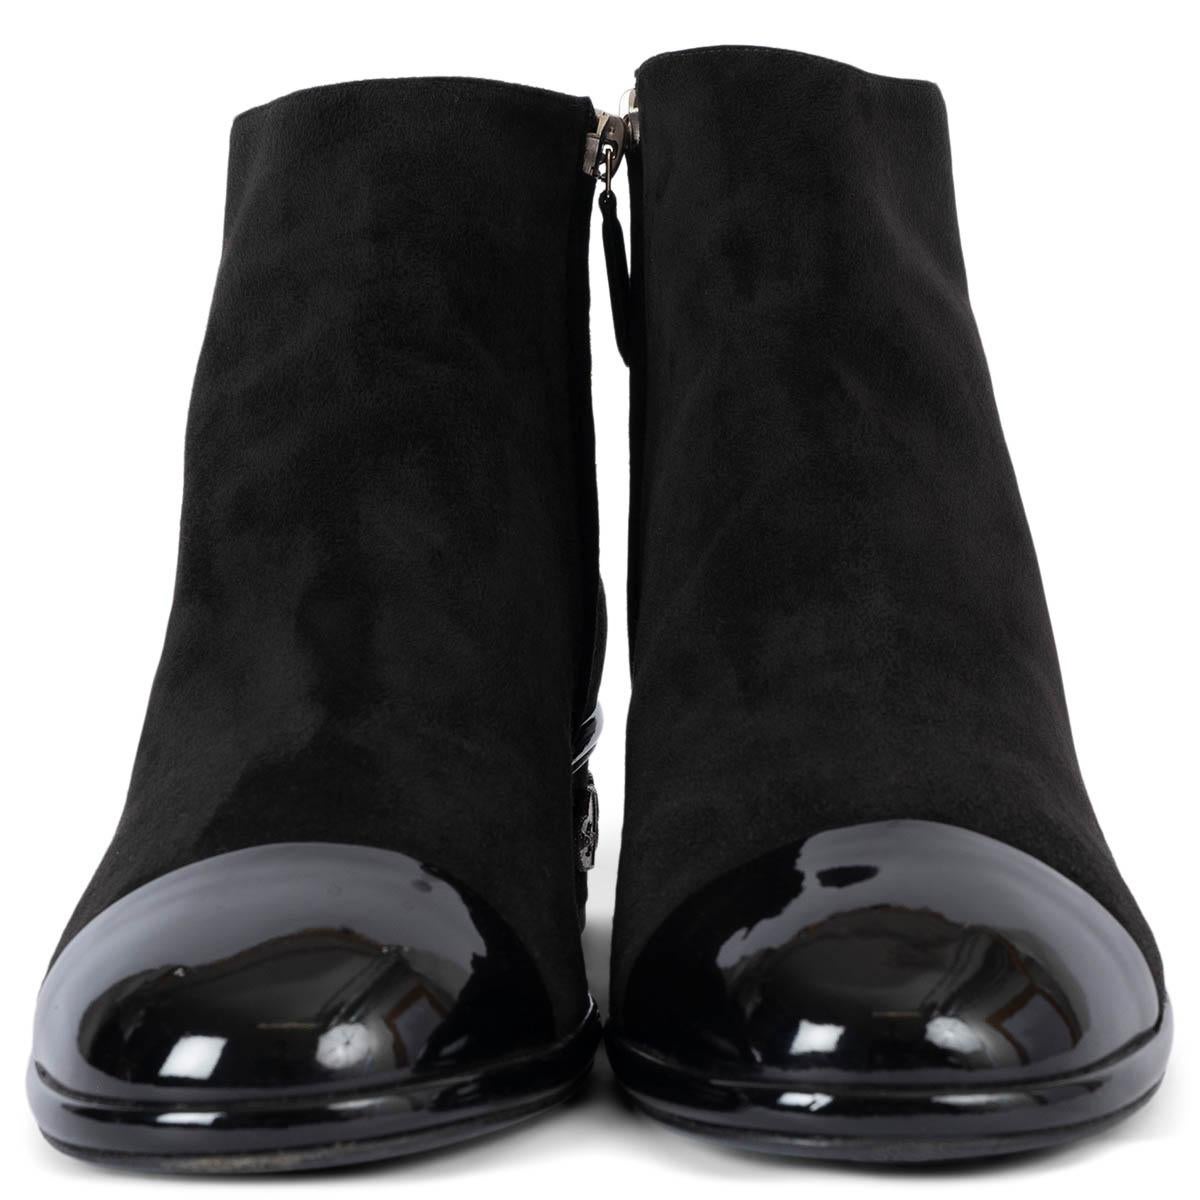 100% authentische Chanel Stiefelette aus schwarzem Wildleder mit schwarzer Lackleder Cap Toe. Das Design zeichnet sich durch silberfarbene Metall-Charms an der Ferse aus. Wurden ein- oder zweimal getragen und sind in ausgezeichnetem Zustand. 

2017